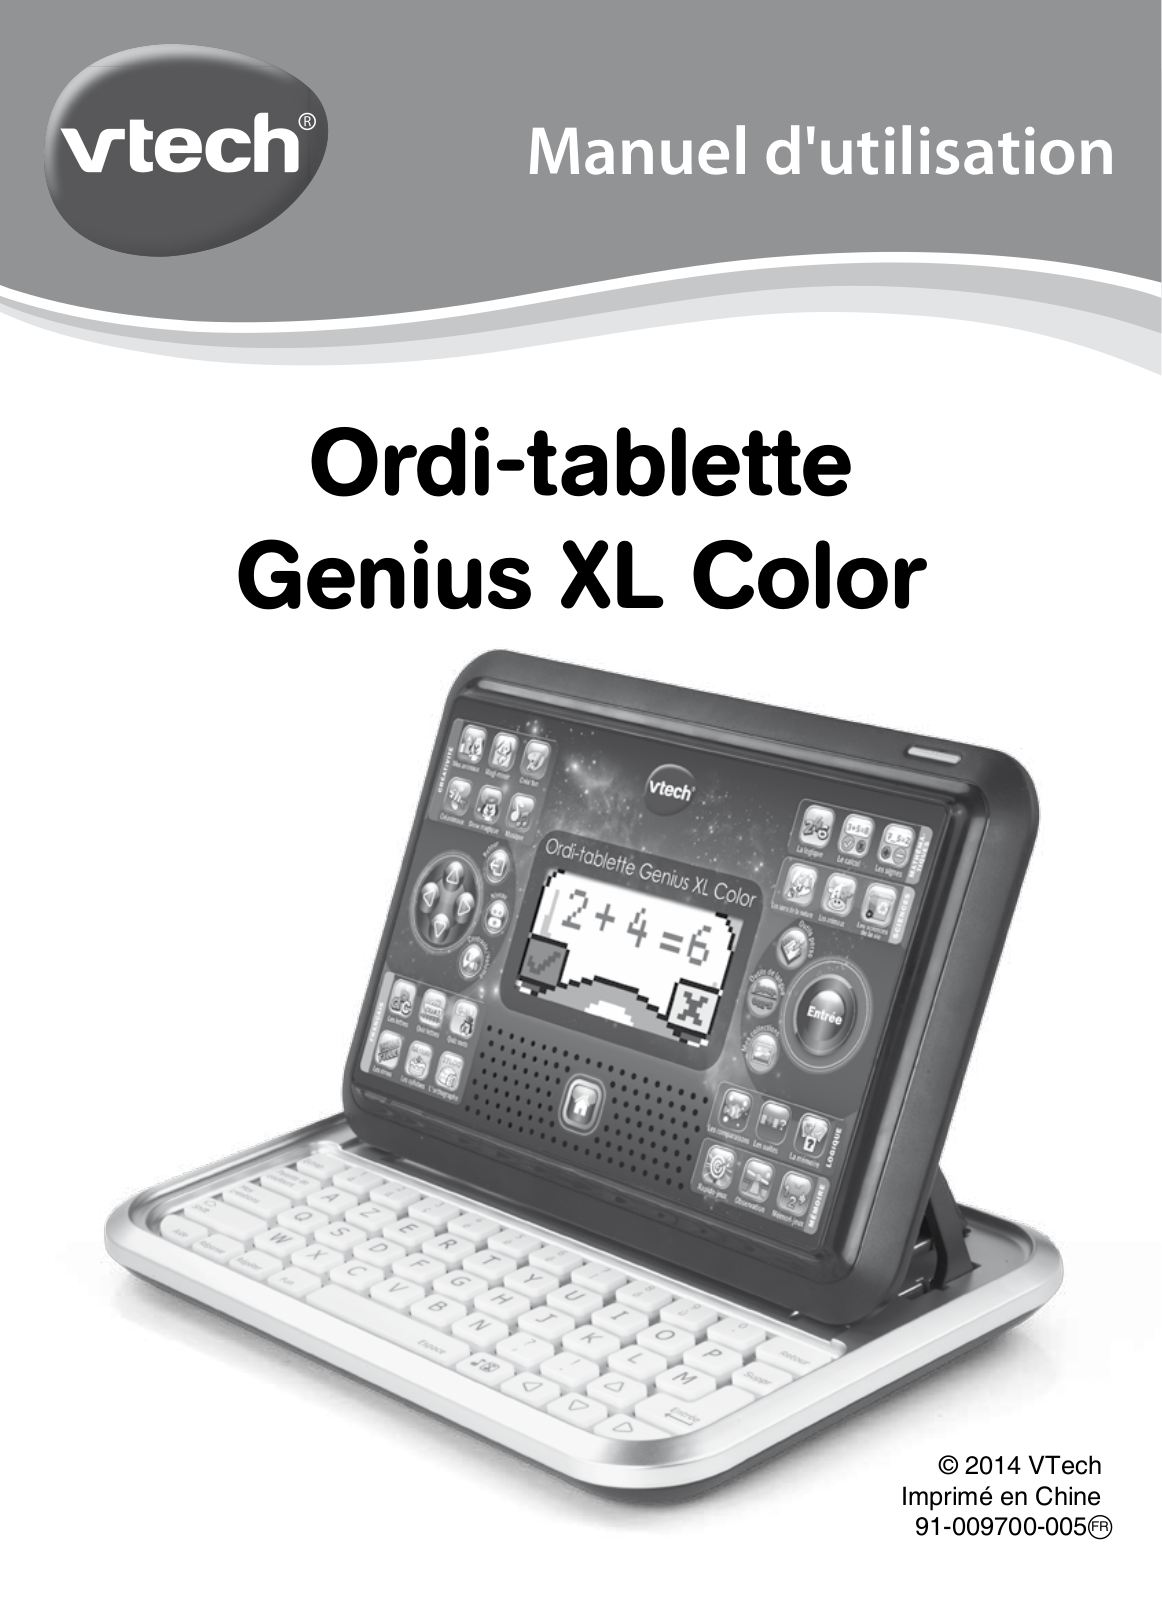 VTECH Genius XL Color Ordi-Tablette Instruction Manual